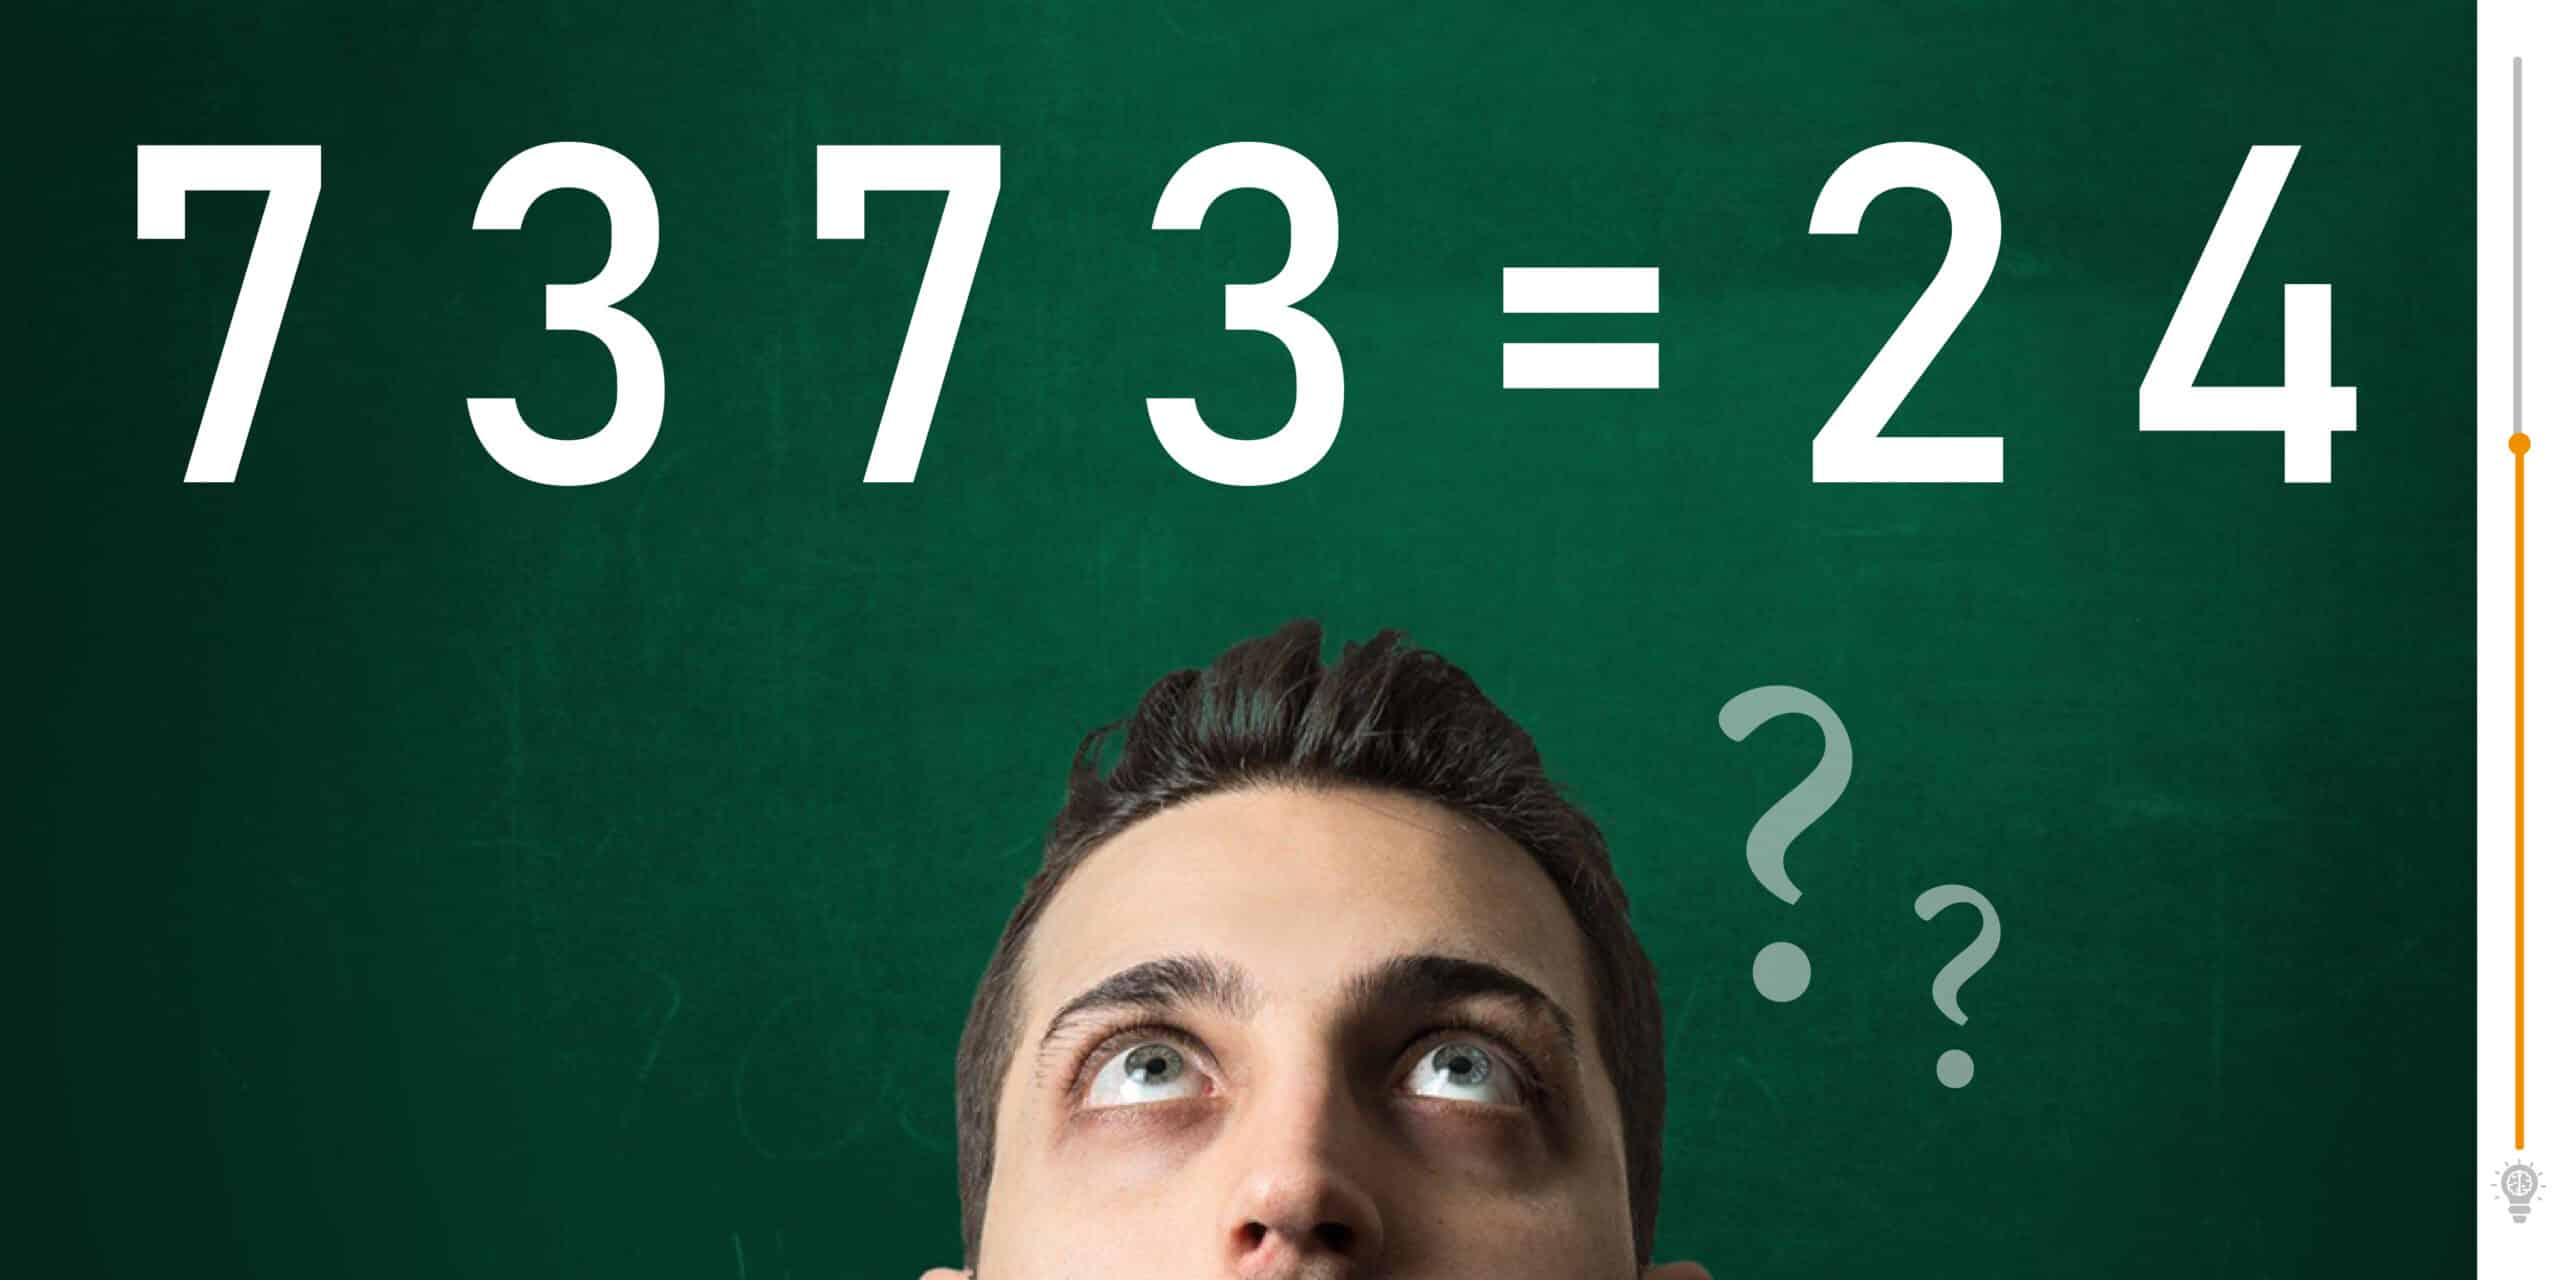 Wiskunde raadsel: Bewijs dat je een wiskundegenie bent. Beantwoord de volgende quiz correct.